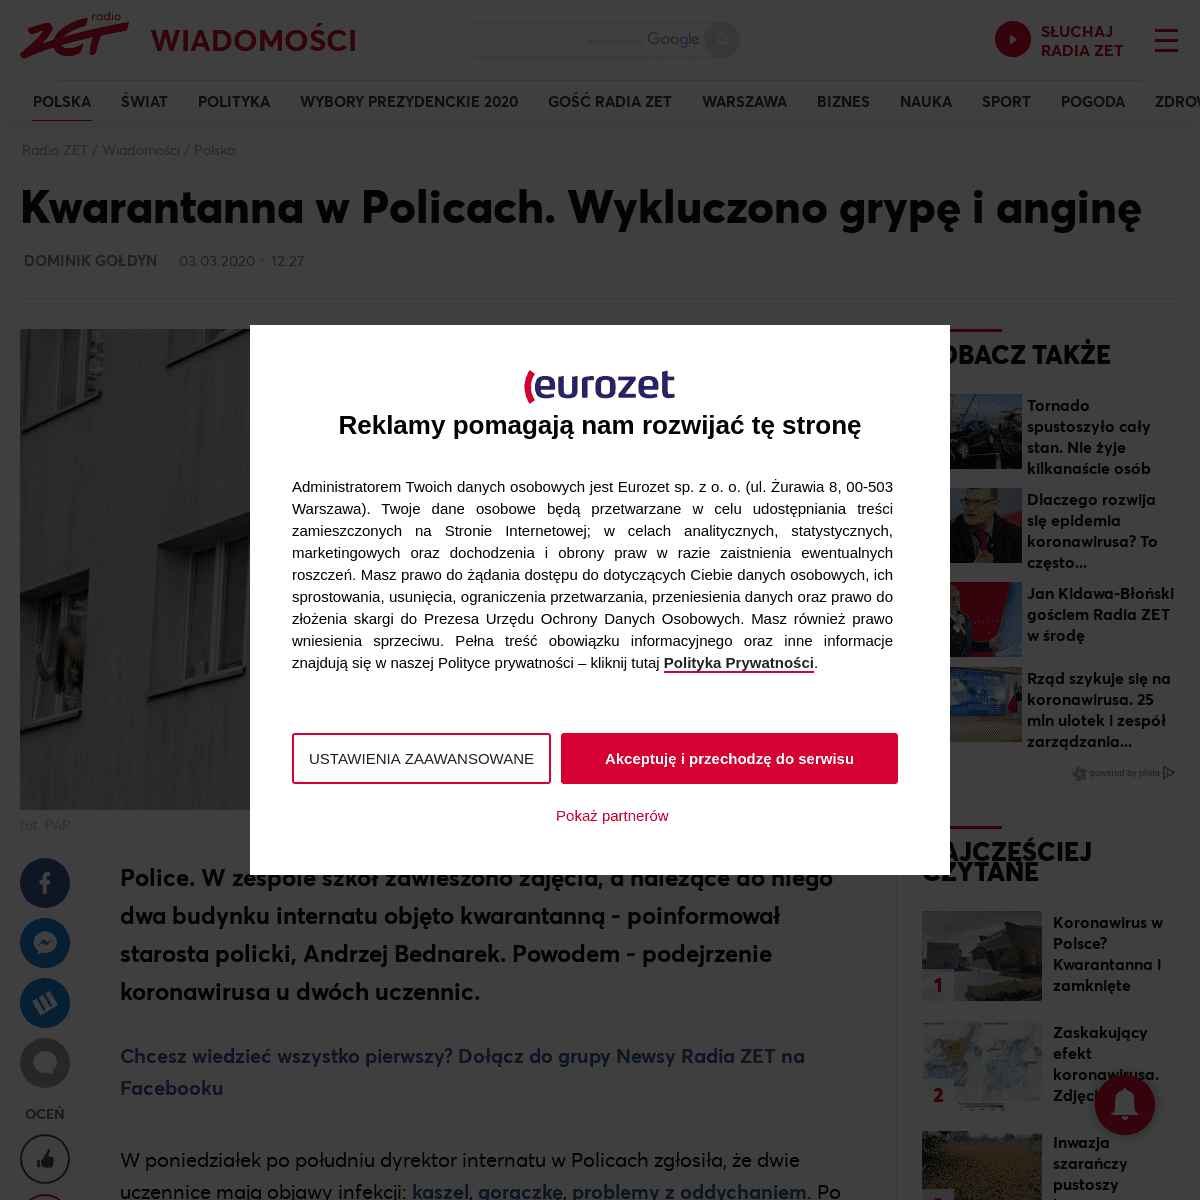 A complete backup of wiadomosci.radiozet.pl/Polska/Police.-Podejrzenie-koronawirusa.-200-uczniow-zamknietych-w-internacie-NOWE-F